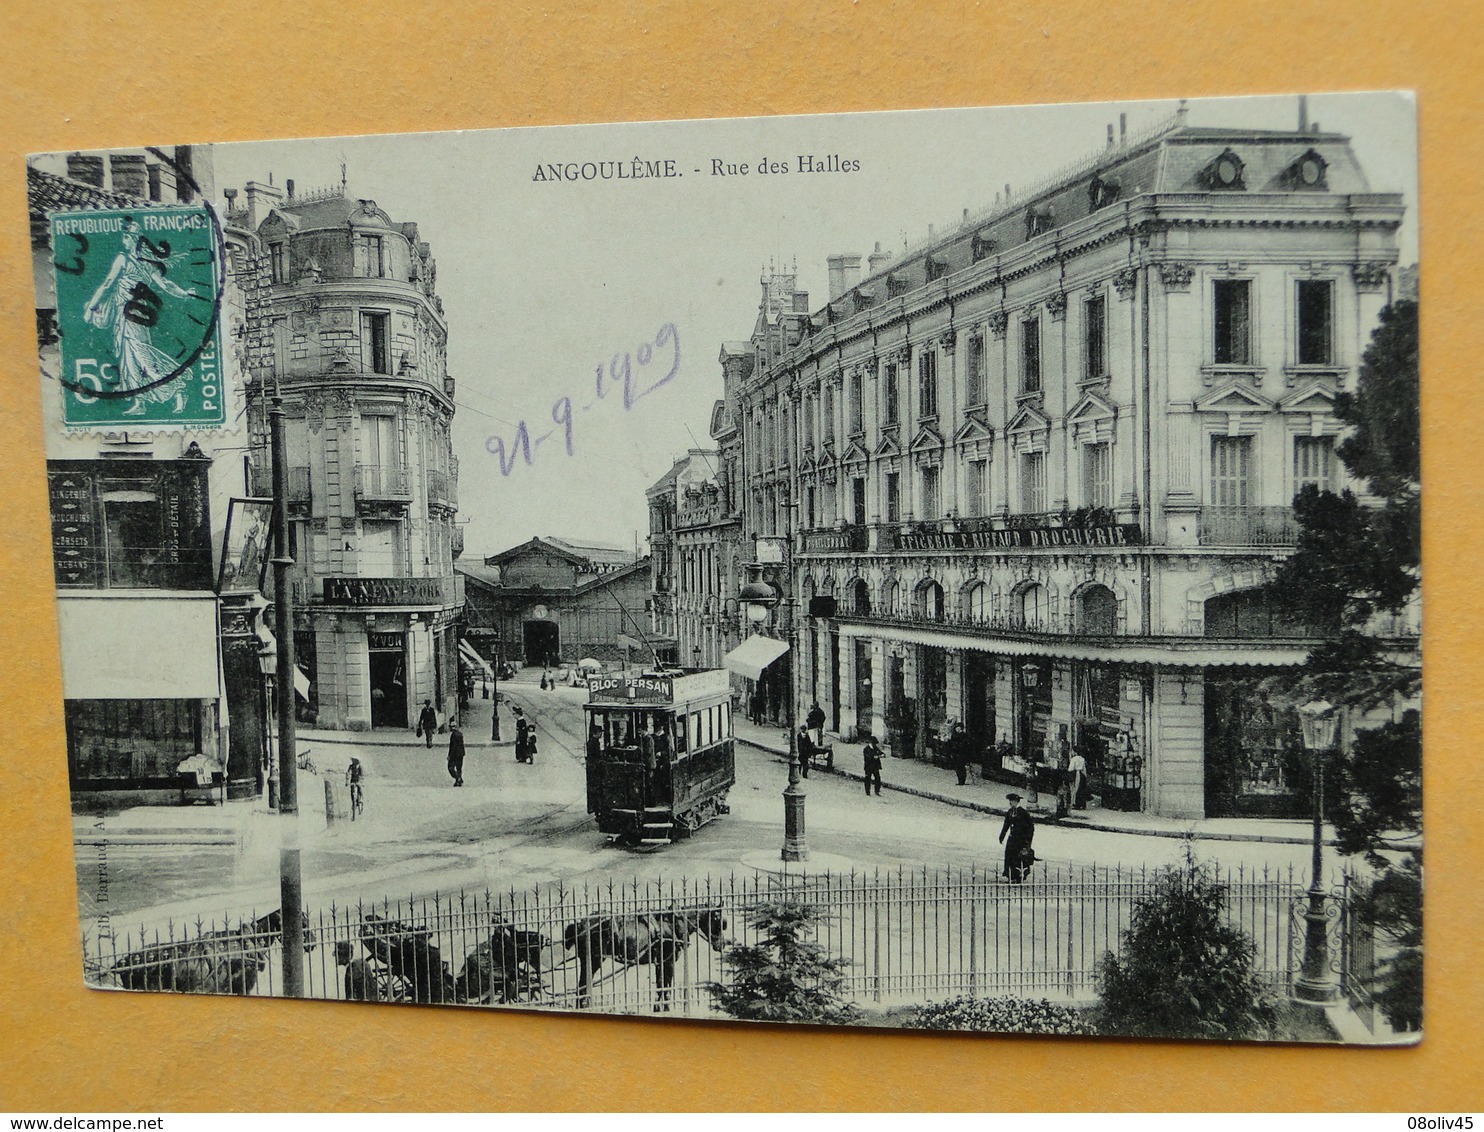 Joli lot de 50 Cartes Postales Anciennes FRANCE -- TOUTES ANIMEES - Voir les 50 scans - BEL ENSEMBLE